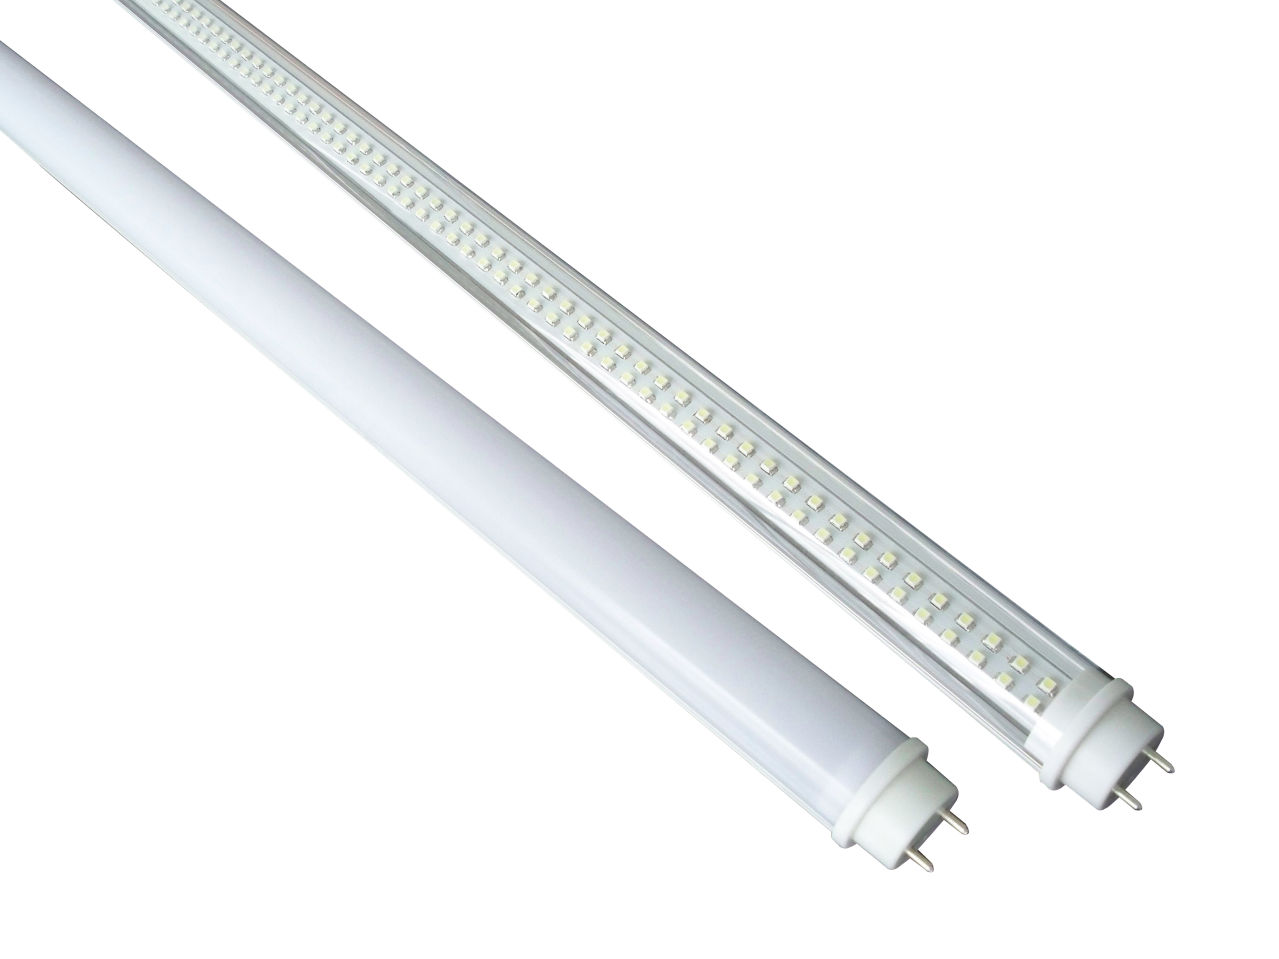 声控双亮度LED灯管 LED智能声控灯管 LED日光灯 T8灯管 节能LED高亮度